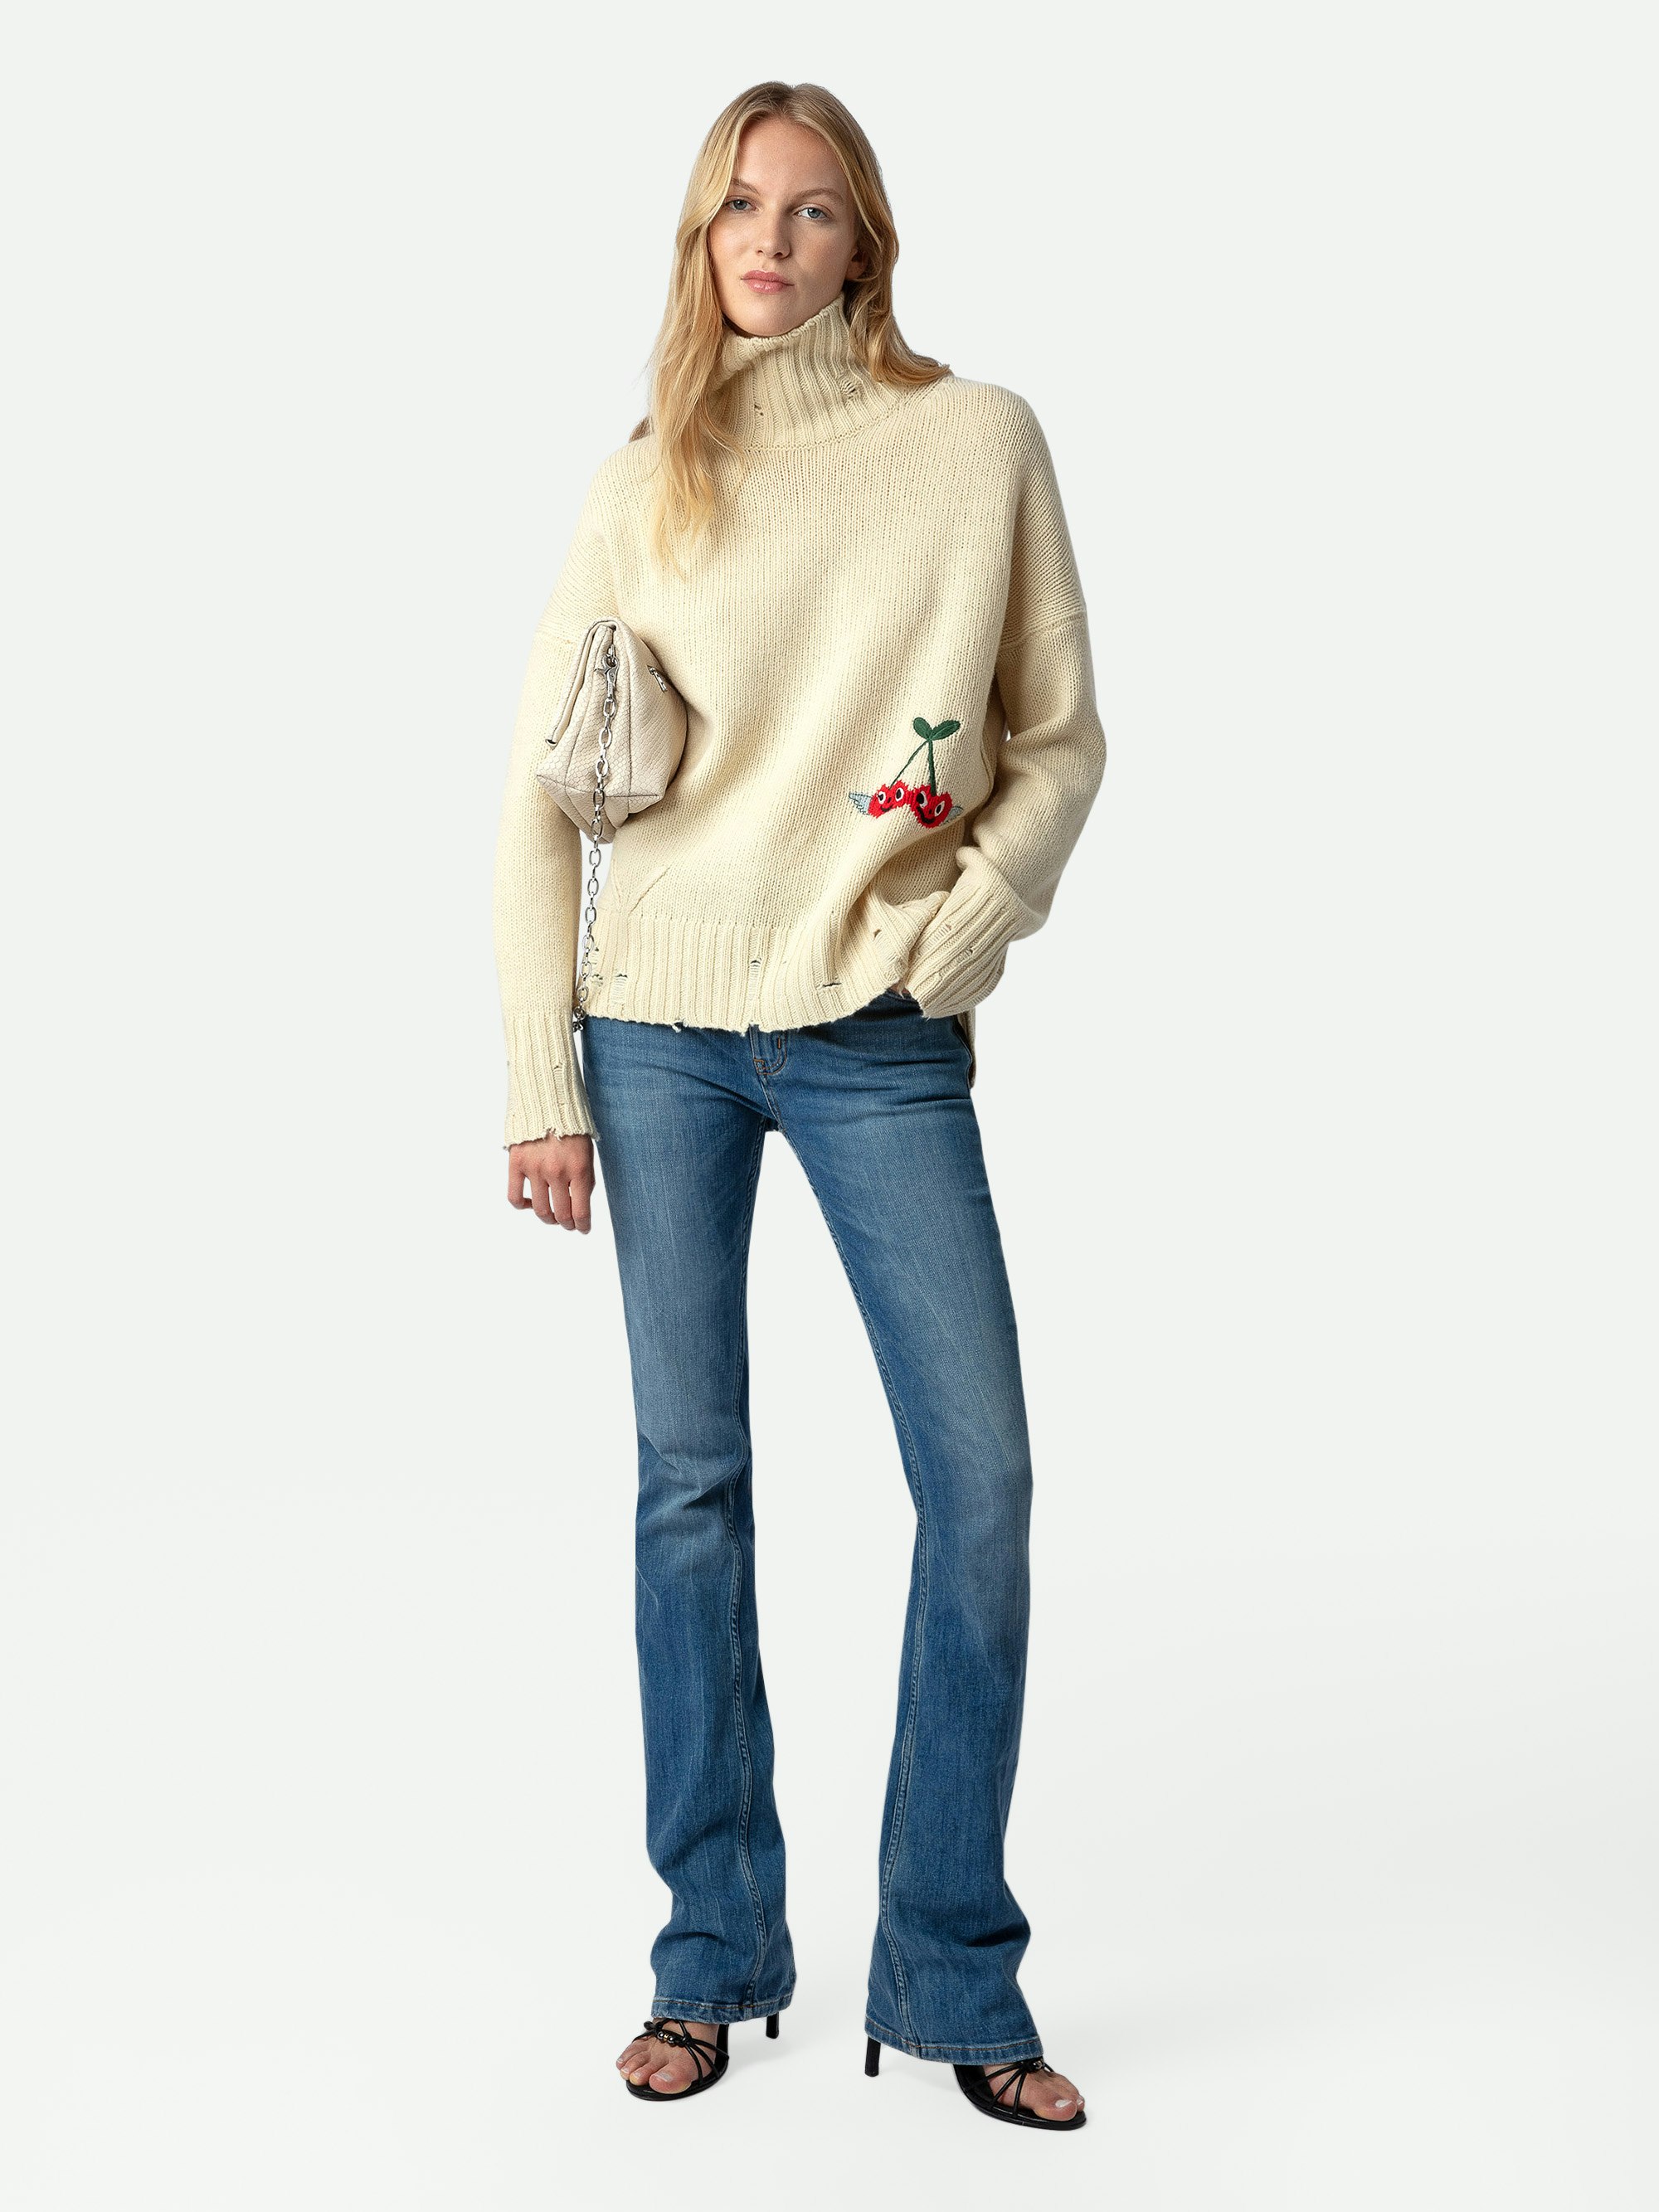 Maglione Bleeza 100% Lana Merino - Maglione in 100% lana merino écru effetto consumato con collo alto e personalizzazioni create da Humberto Cruz.